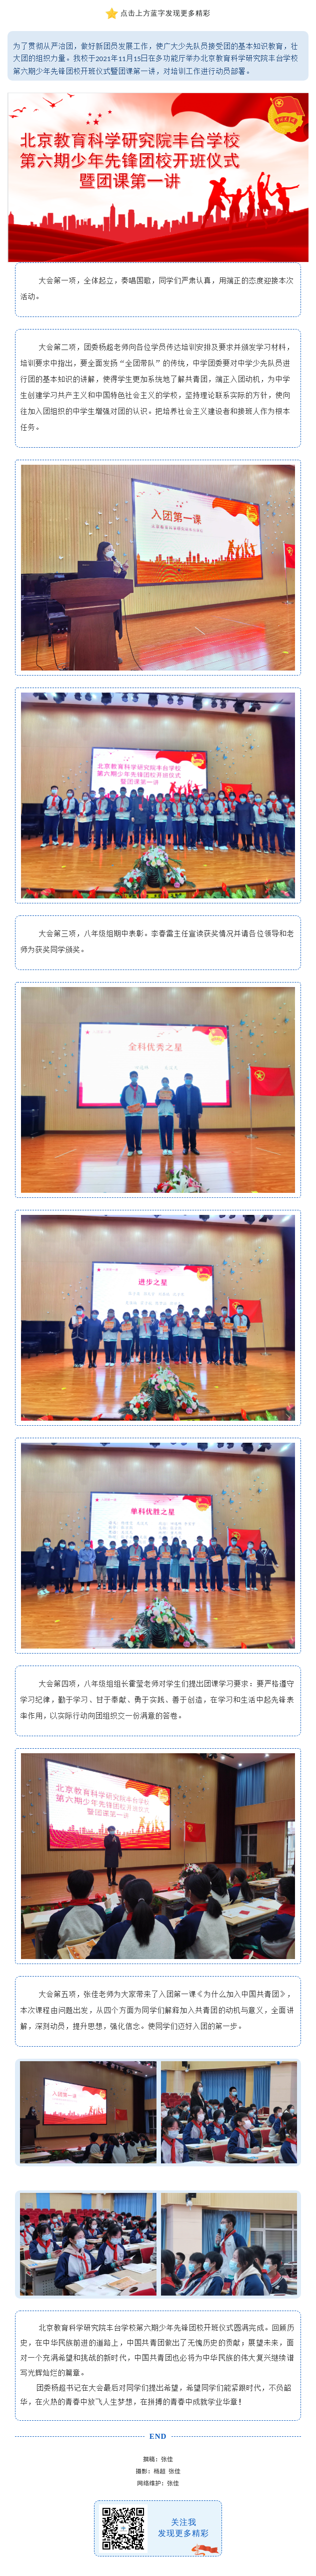 20211116北京教育科学研究院丰台学校第六期少年先锋团校 开班仪式暨团课第一讲